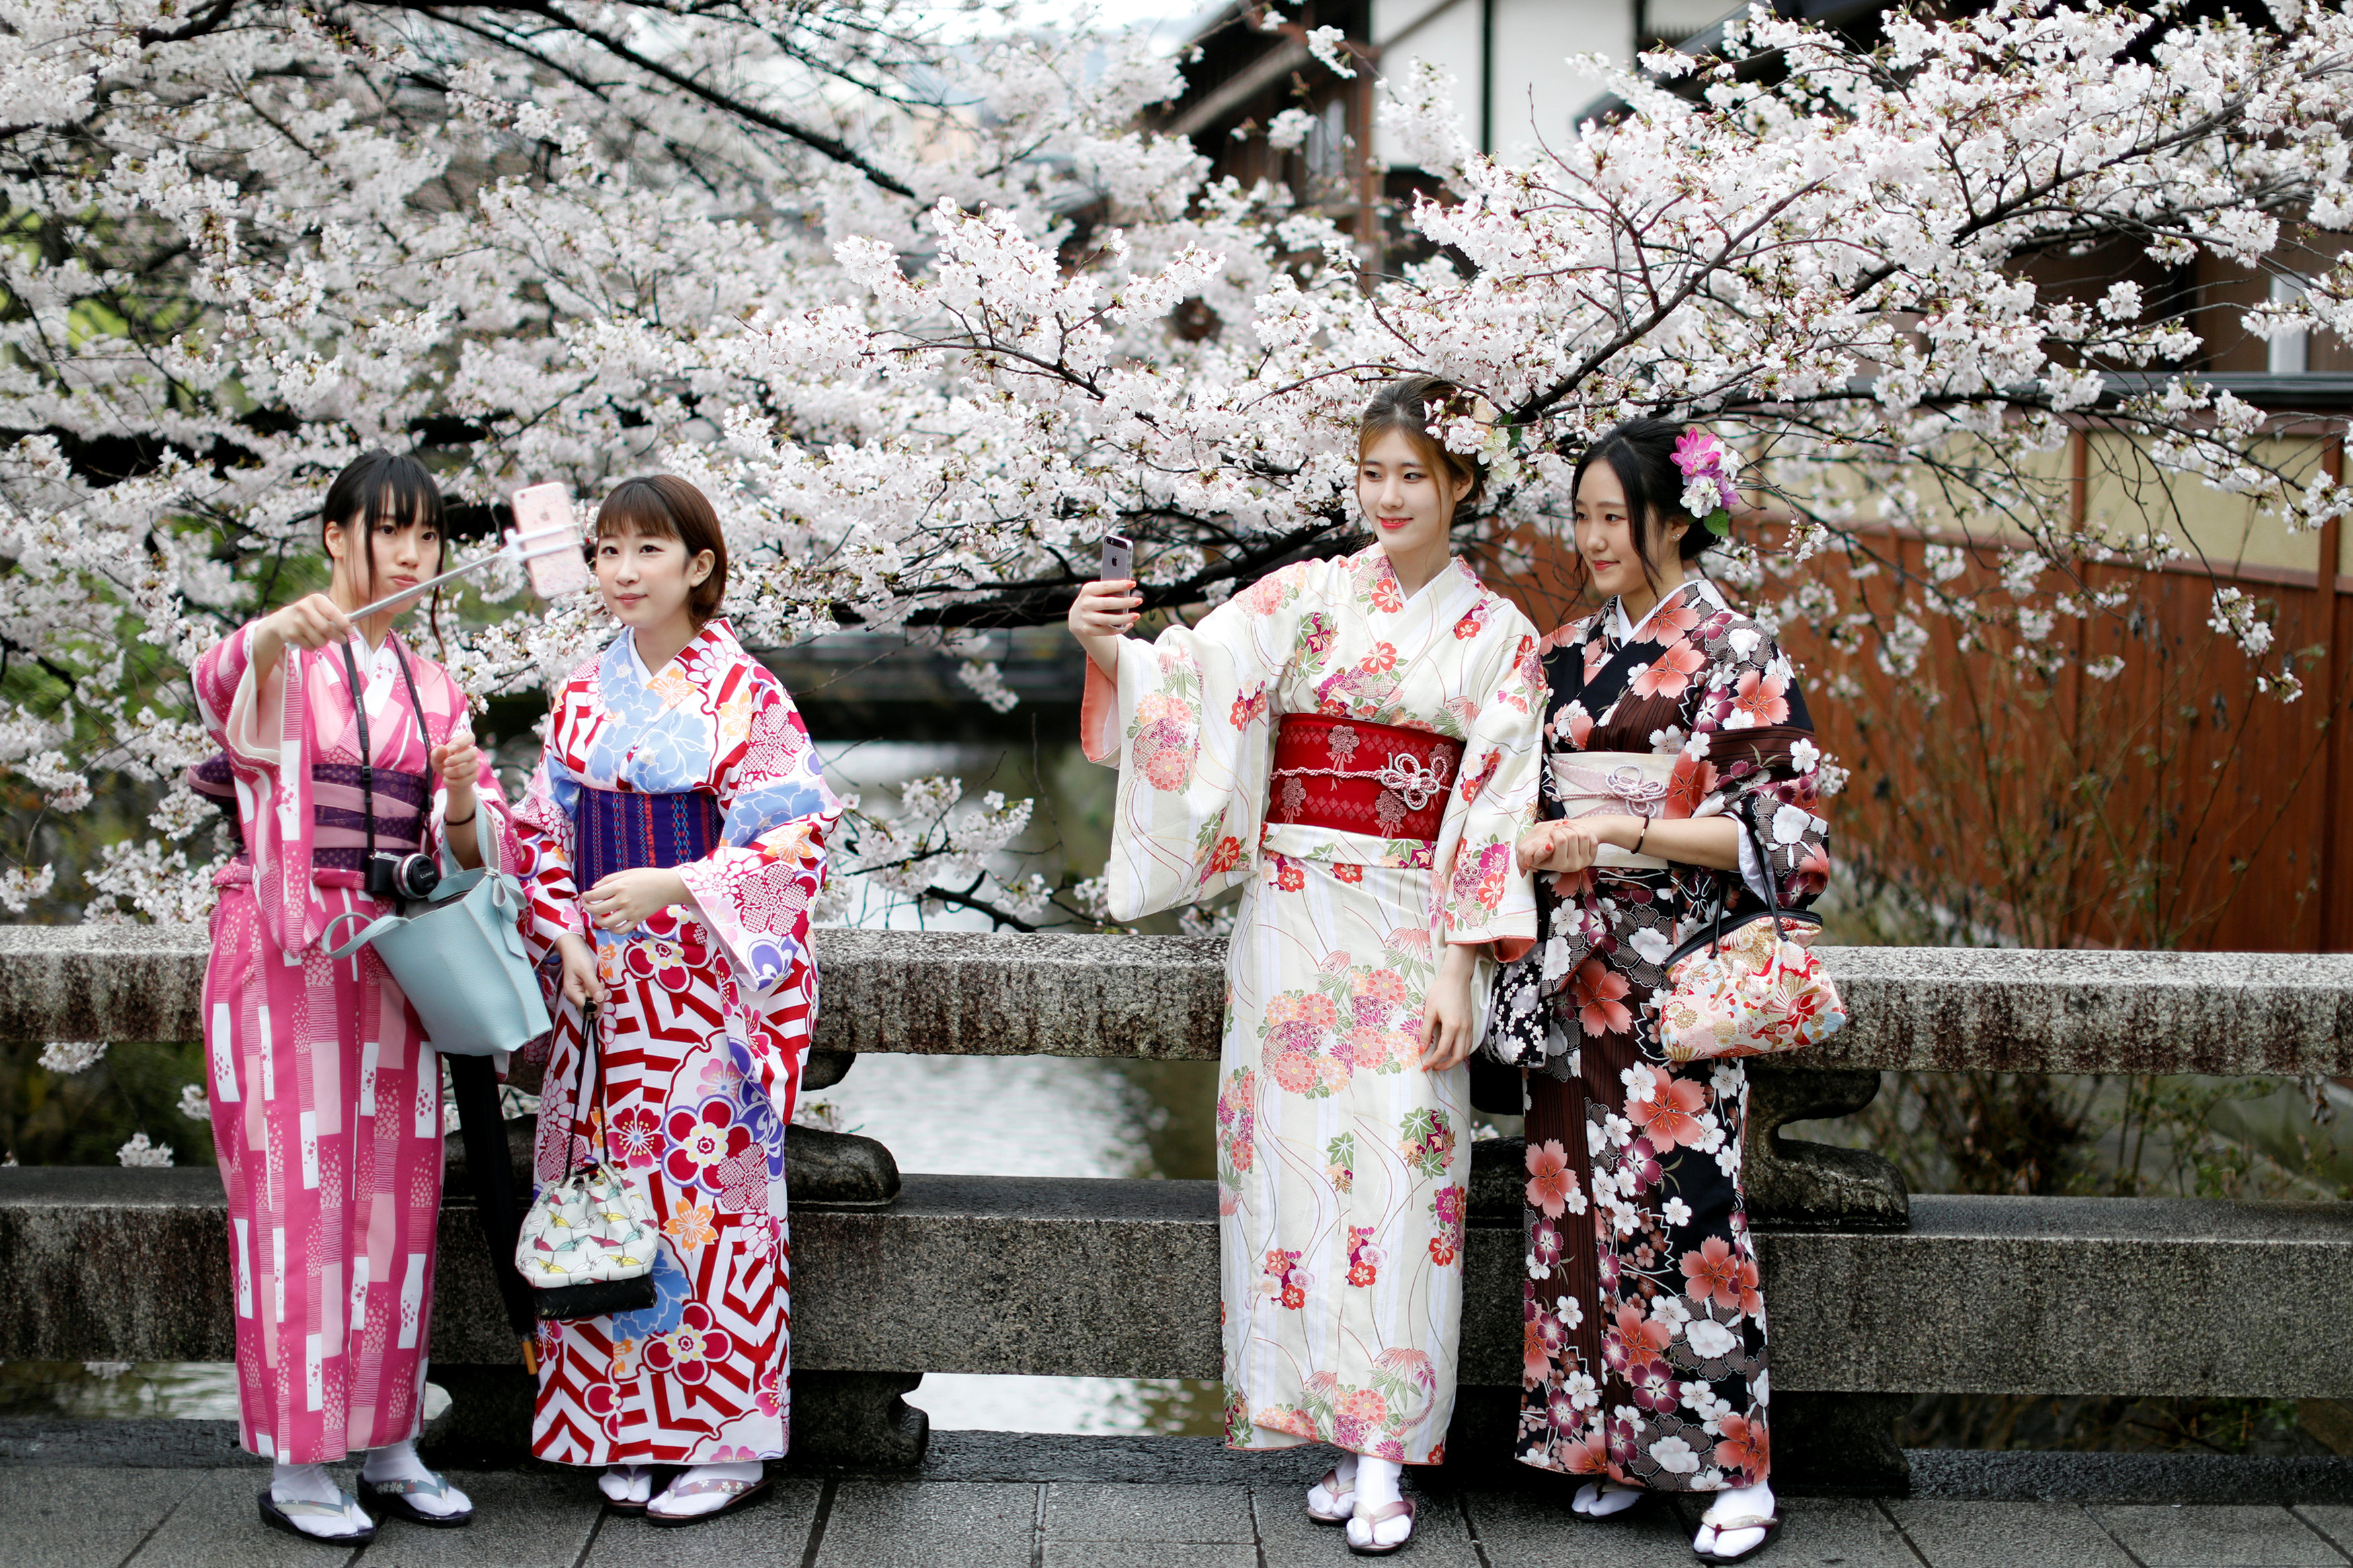 جانب من احتفالات اليابانيون بعيد الربيع